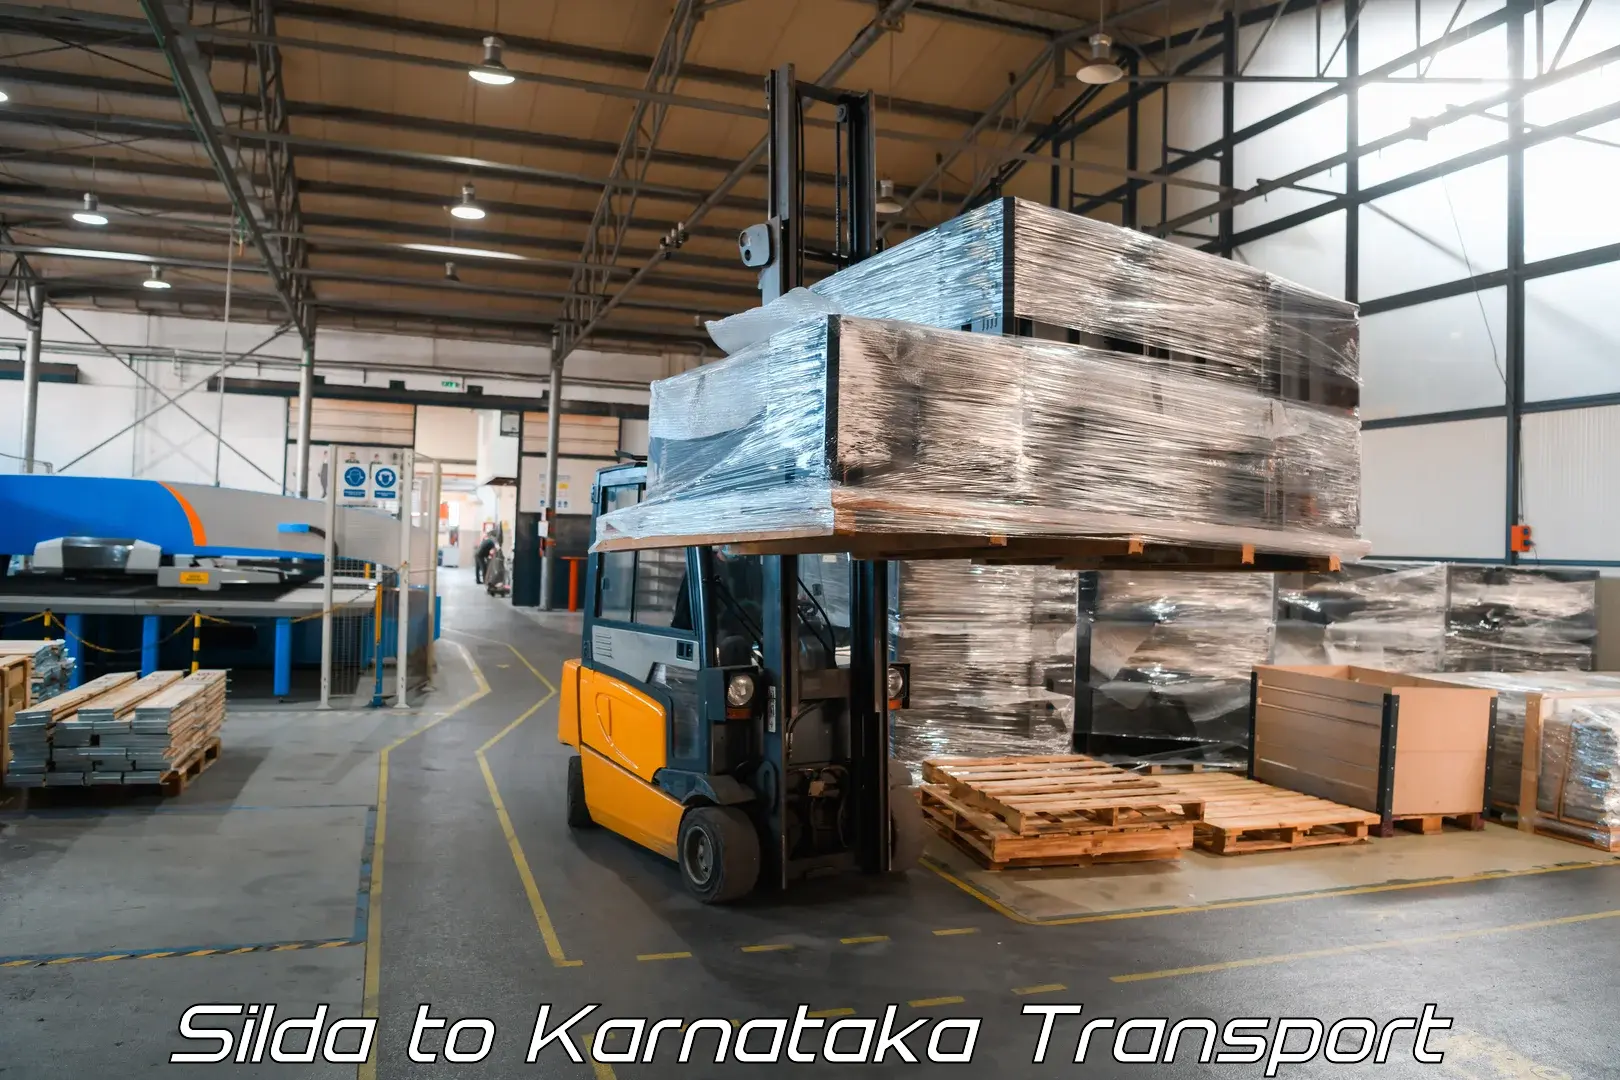 Truck transport companies in India Silda to Yenepoya Mangalore